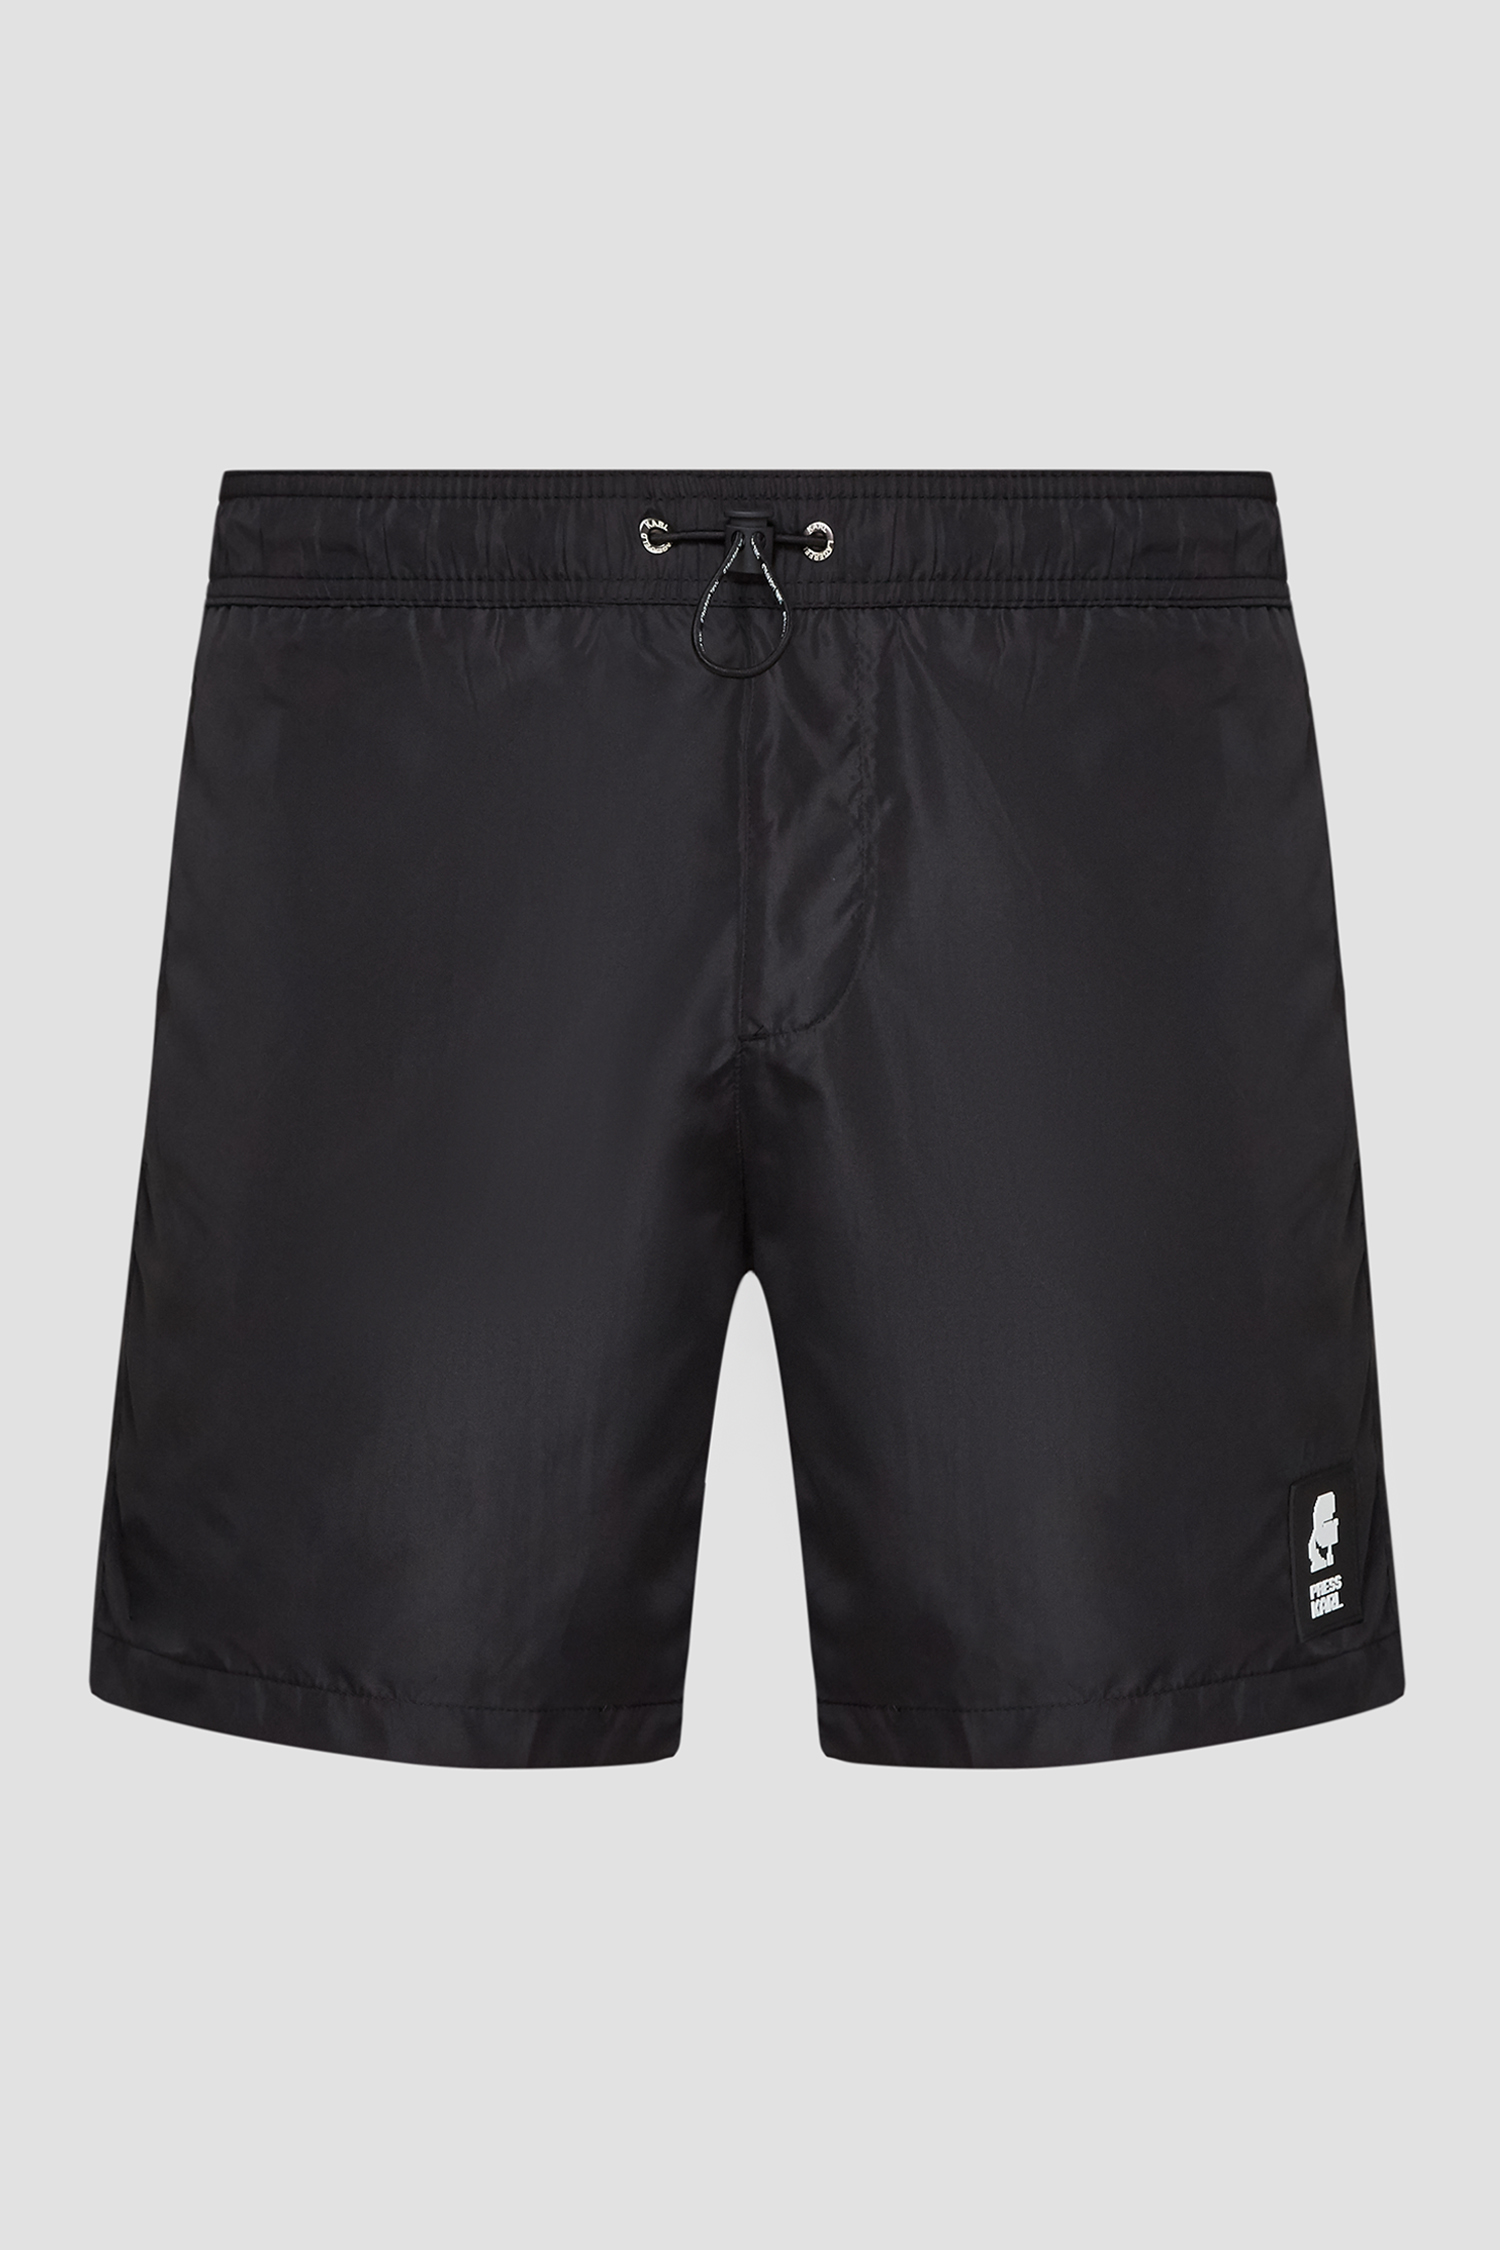 Мужские черные плавательные шорты Karl Lagerfeld KL21MBM01;BLACK